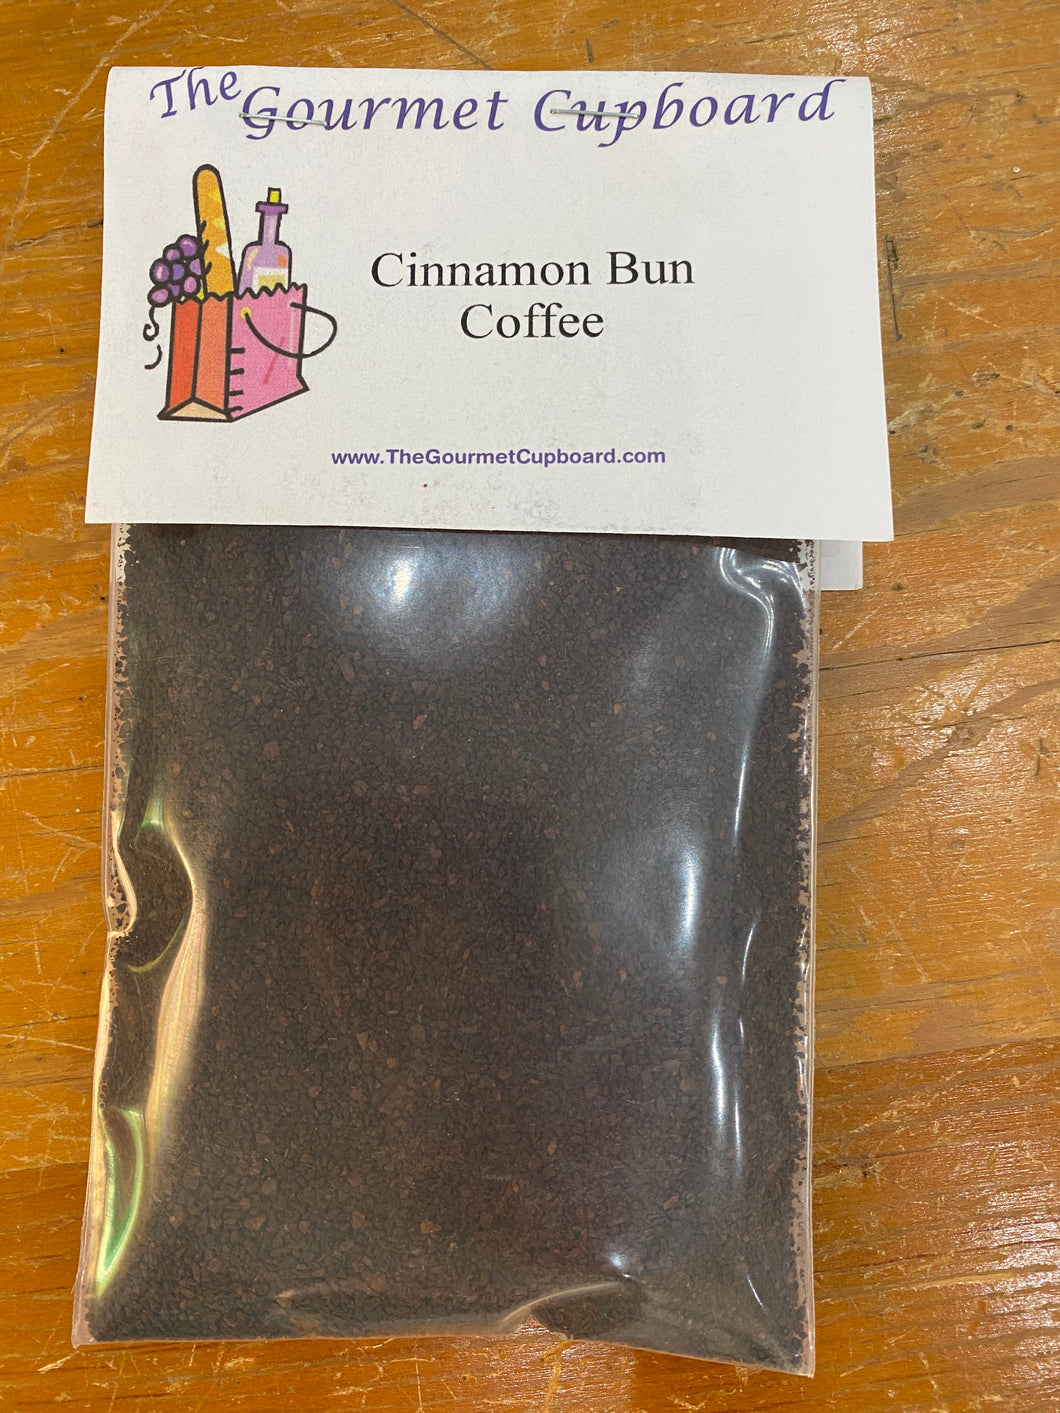 Cinnamon Bun Coffee